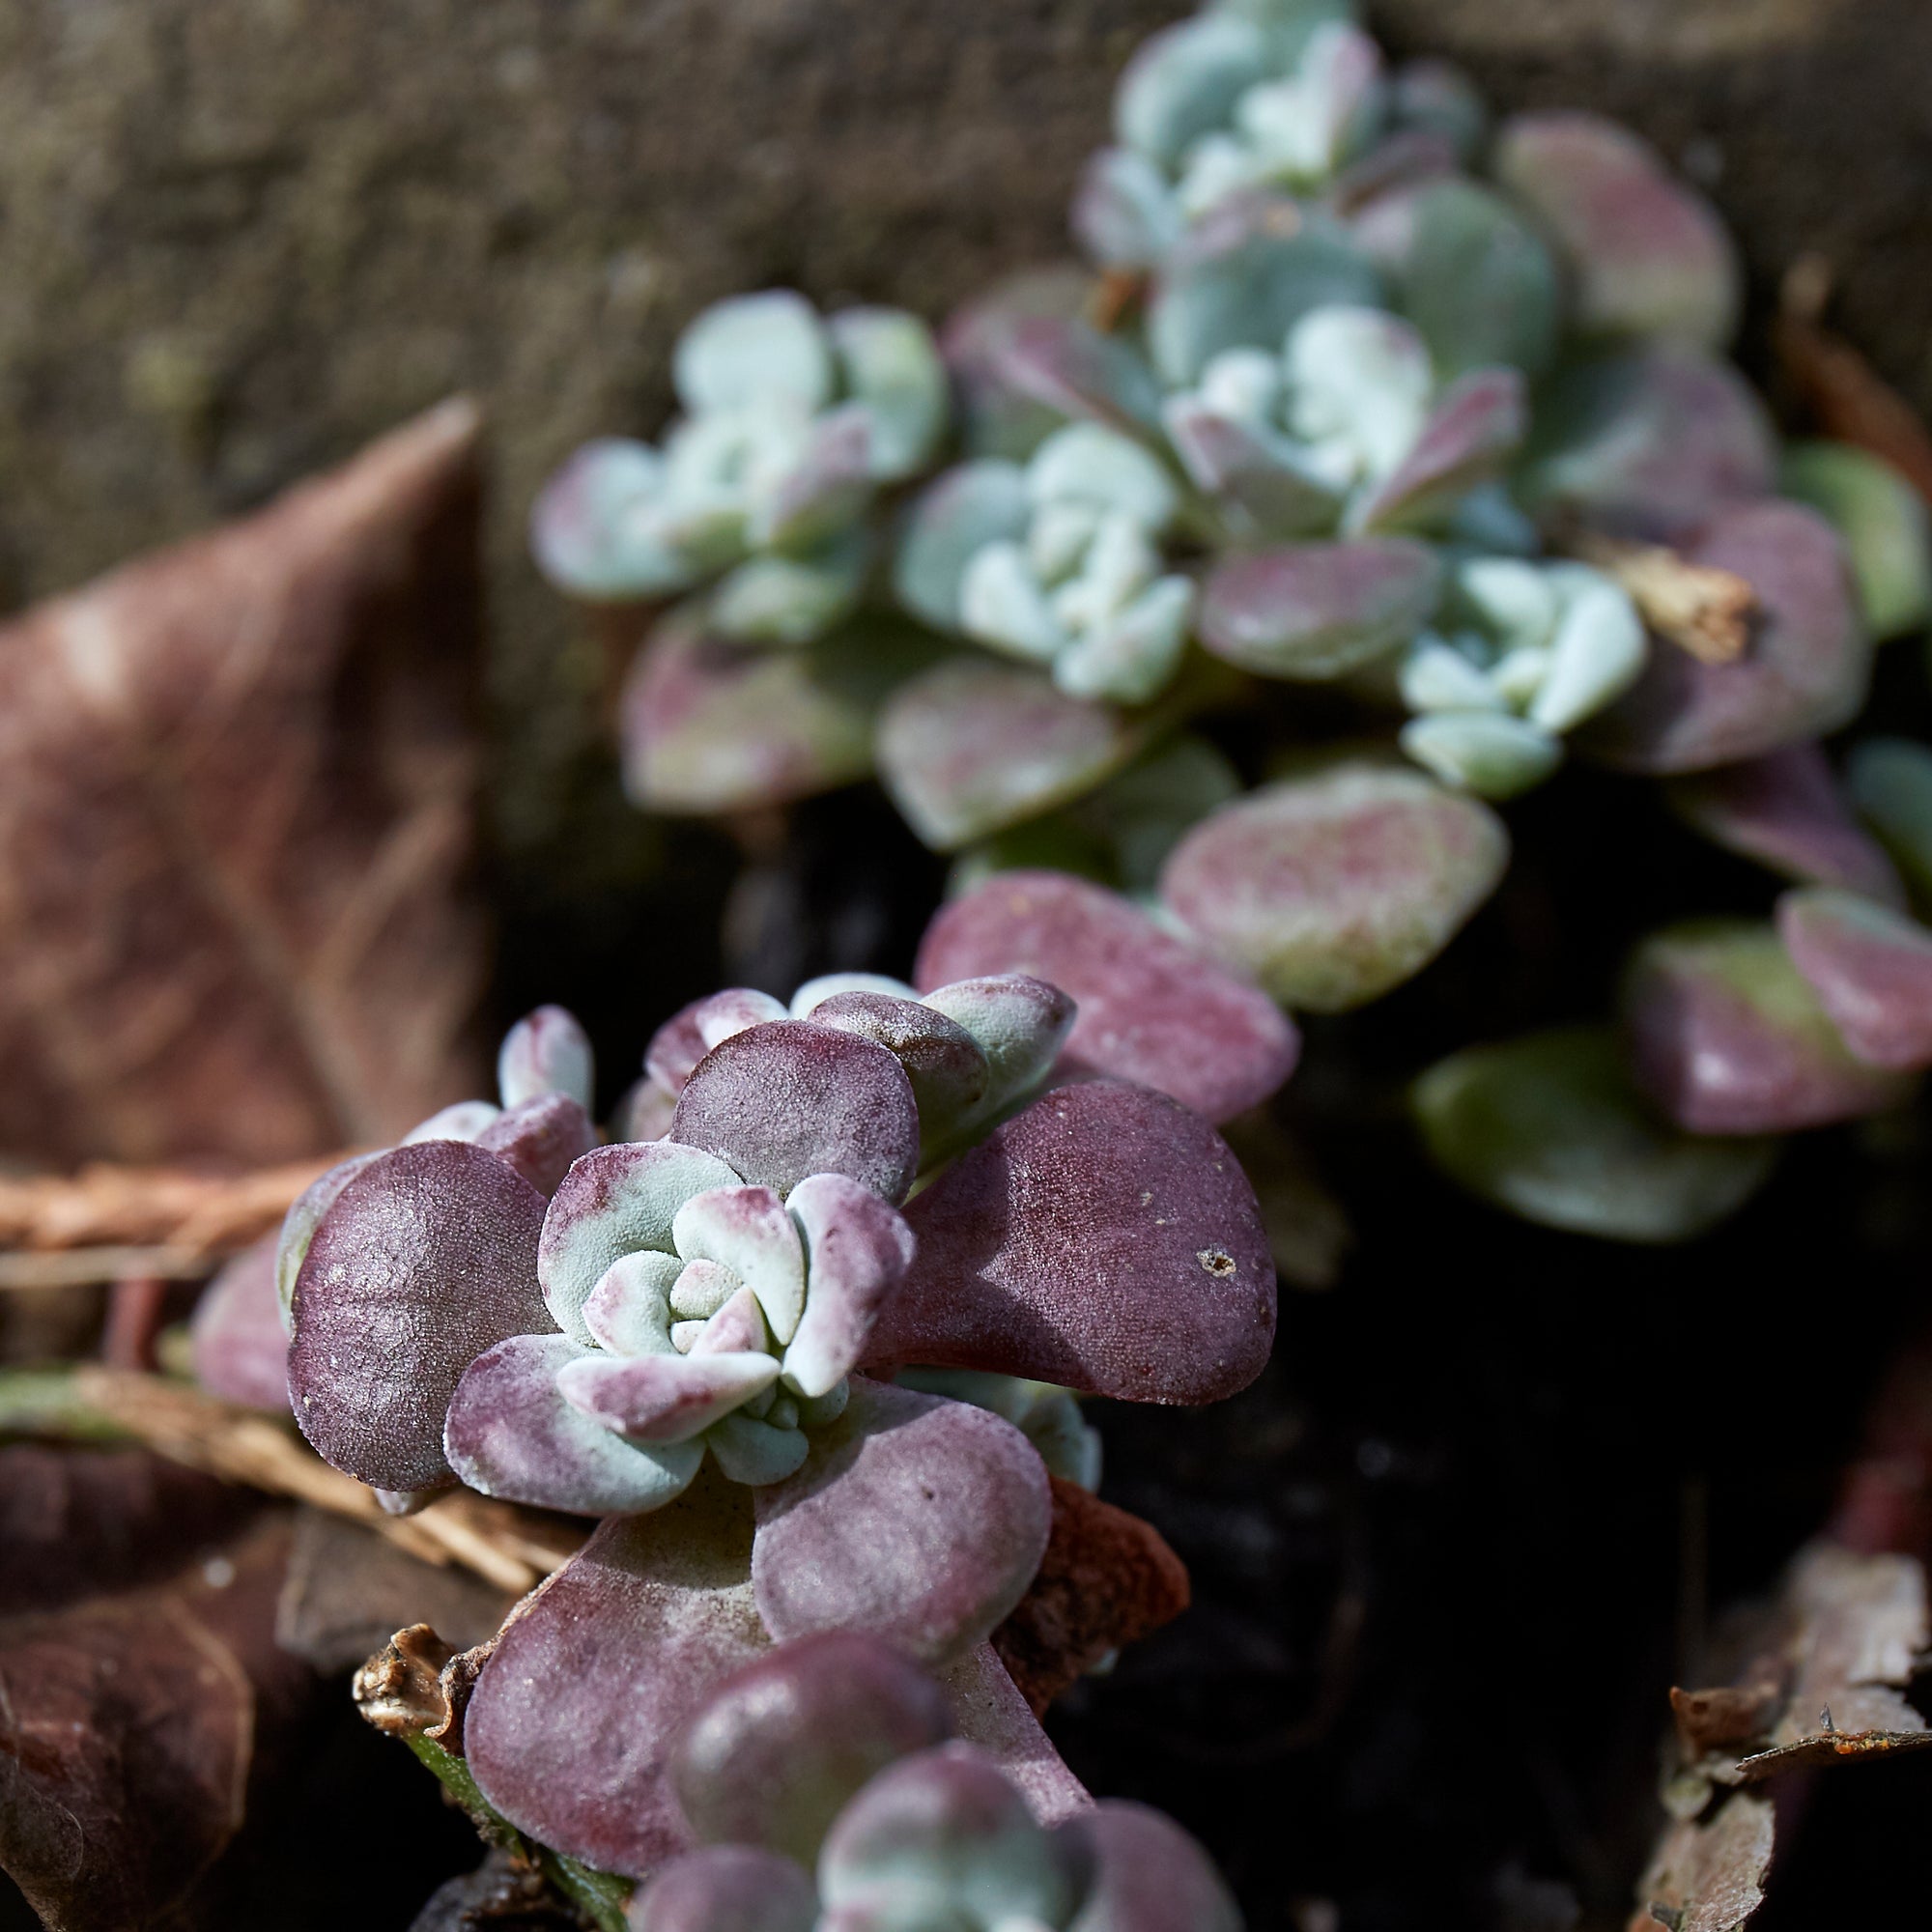 Sedum spathulifolium "purpurea" (Purple Broadleaf Stonecrop)